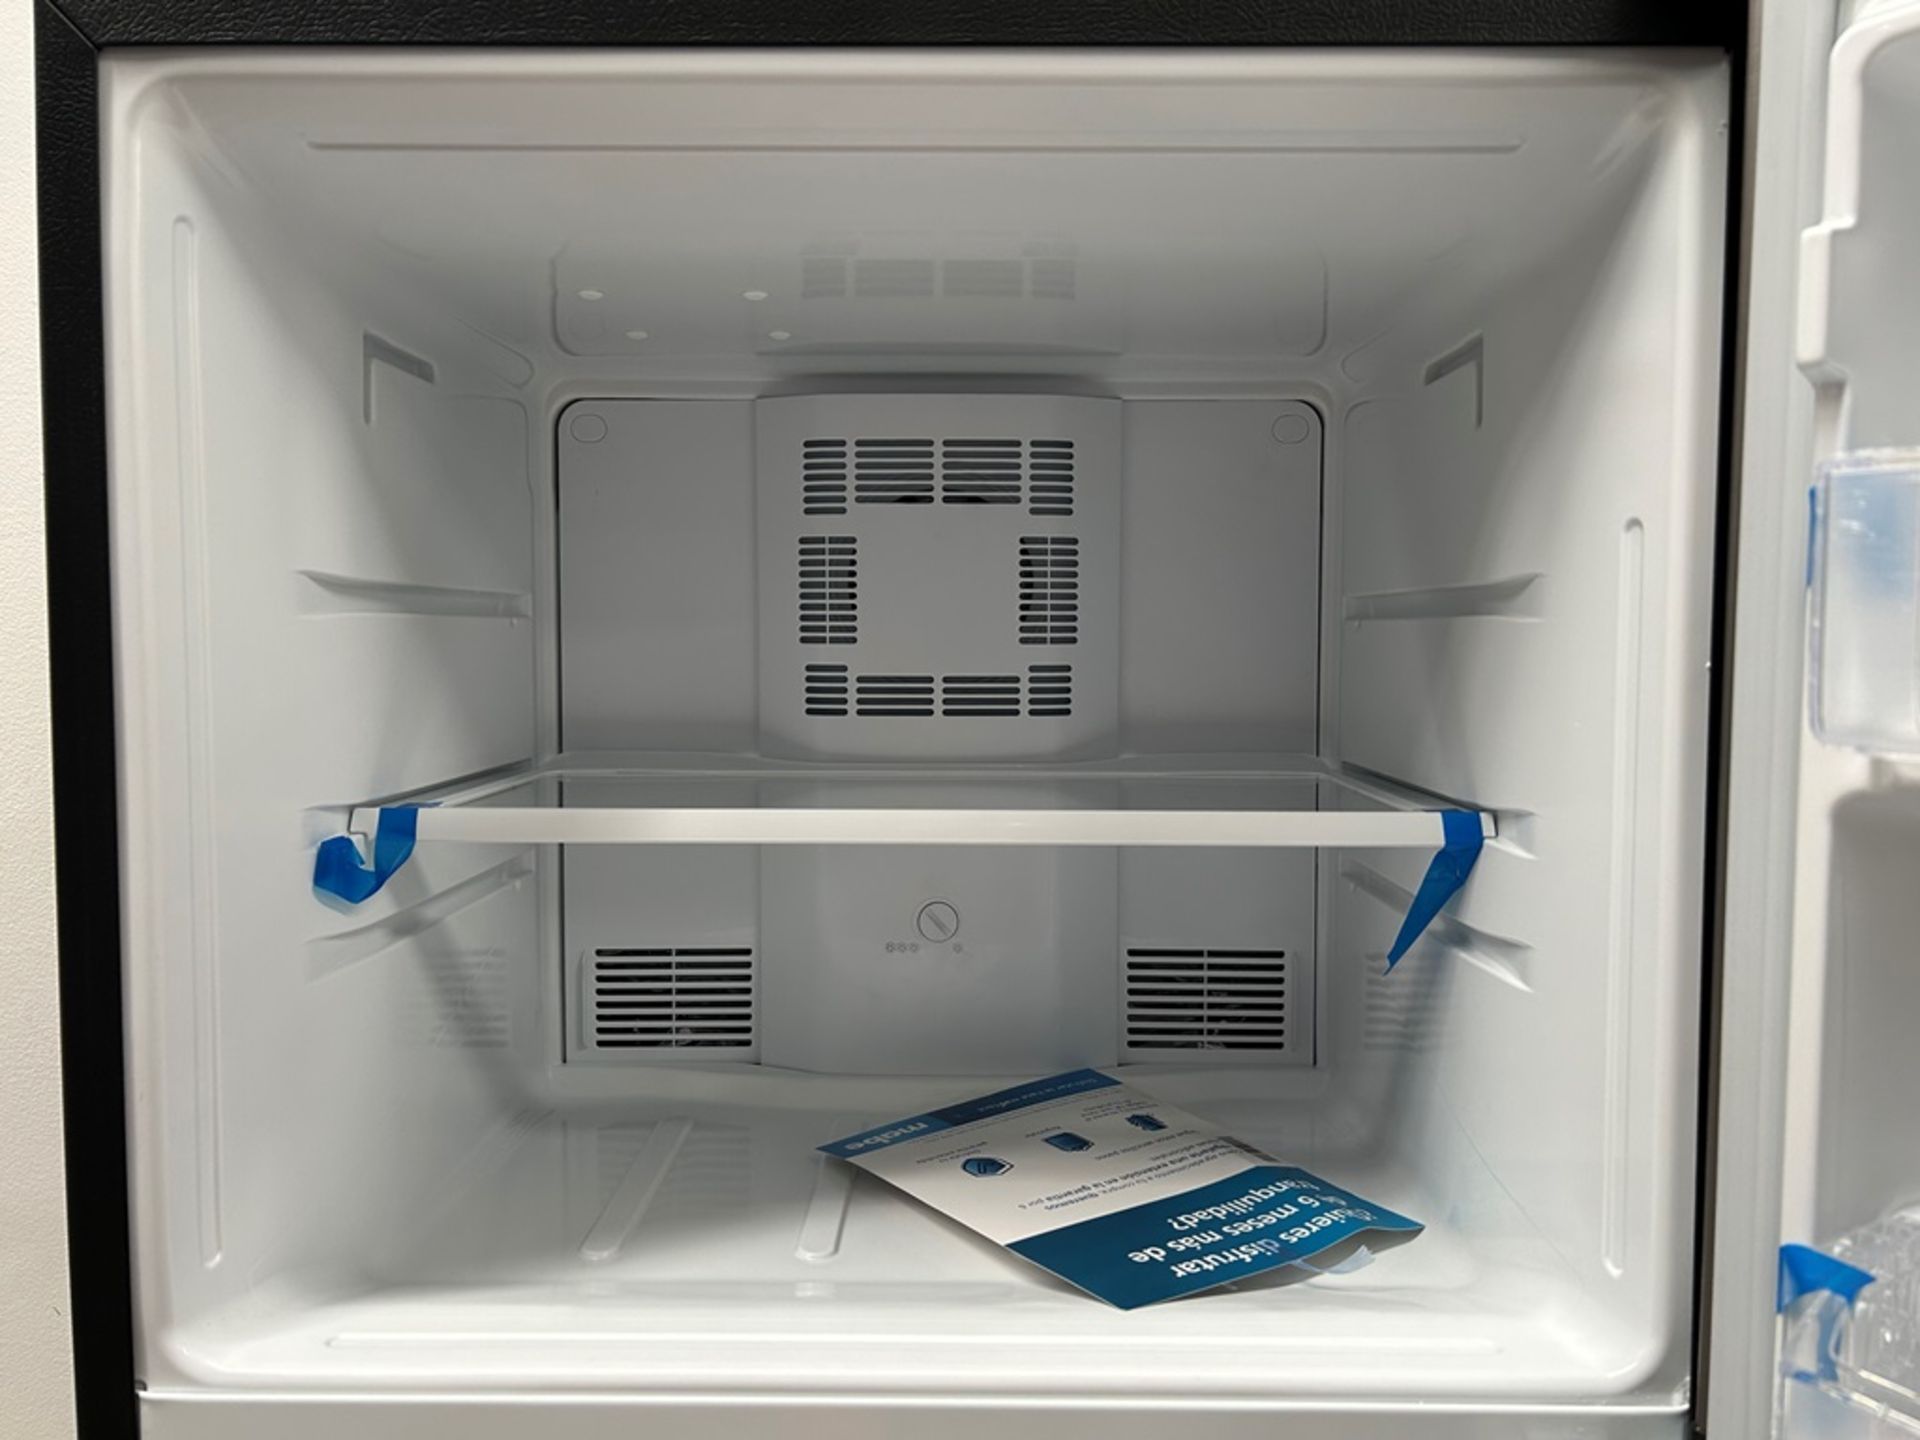 Lote de 2 refrigeradores contiene: 1 refrigerador Marca MABE, Modelo RME360PVMRM, Serie 01988, Colo - Image 5 of 18